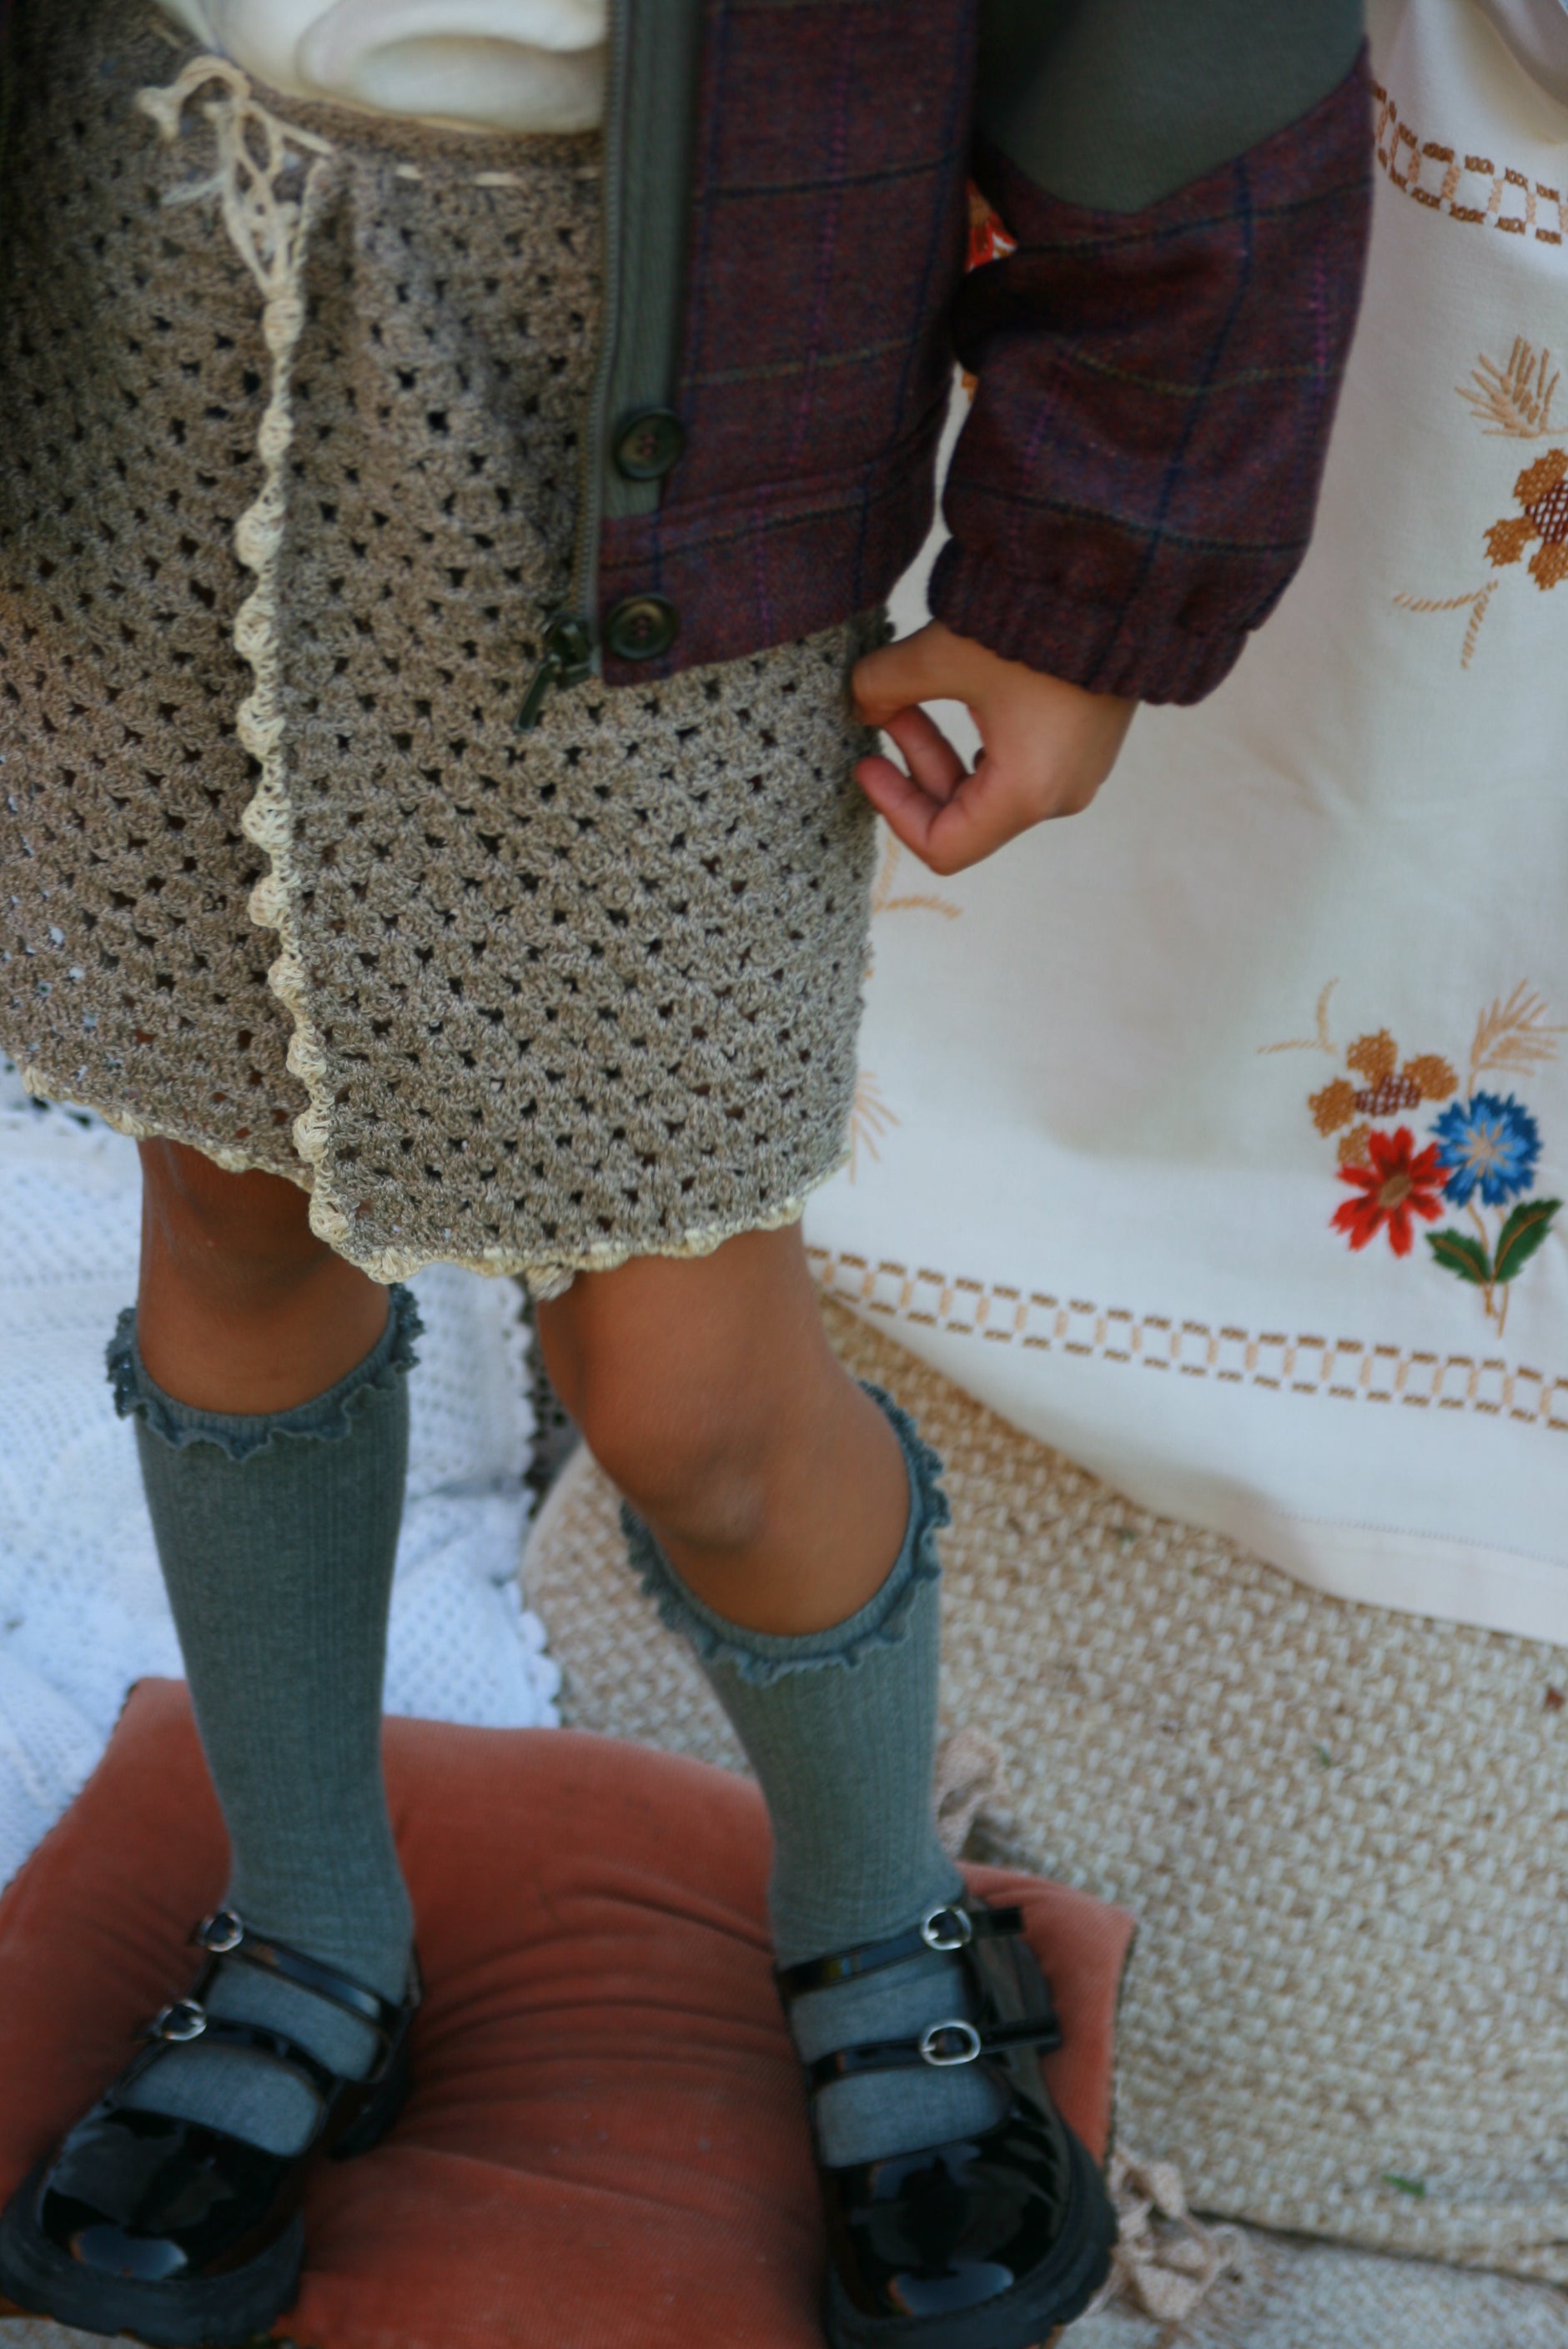 Alma crocheted skirt